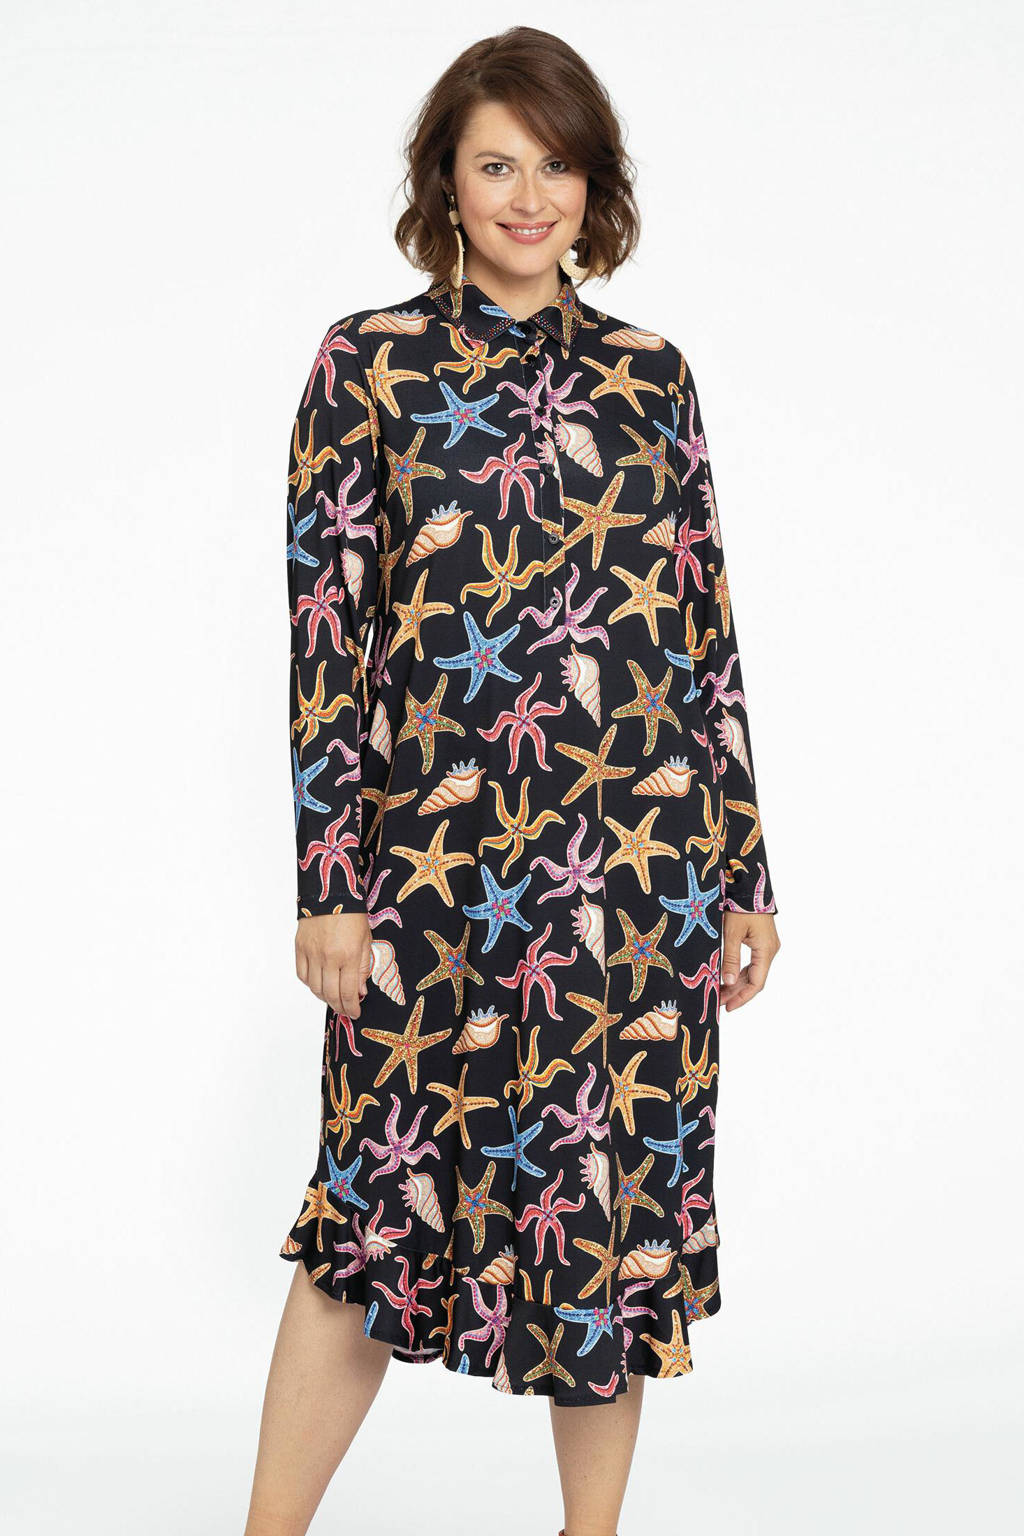 Yoek blousejurk MARINA van travelstof met all over print zwart/roze/lichtgeel